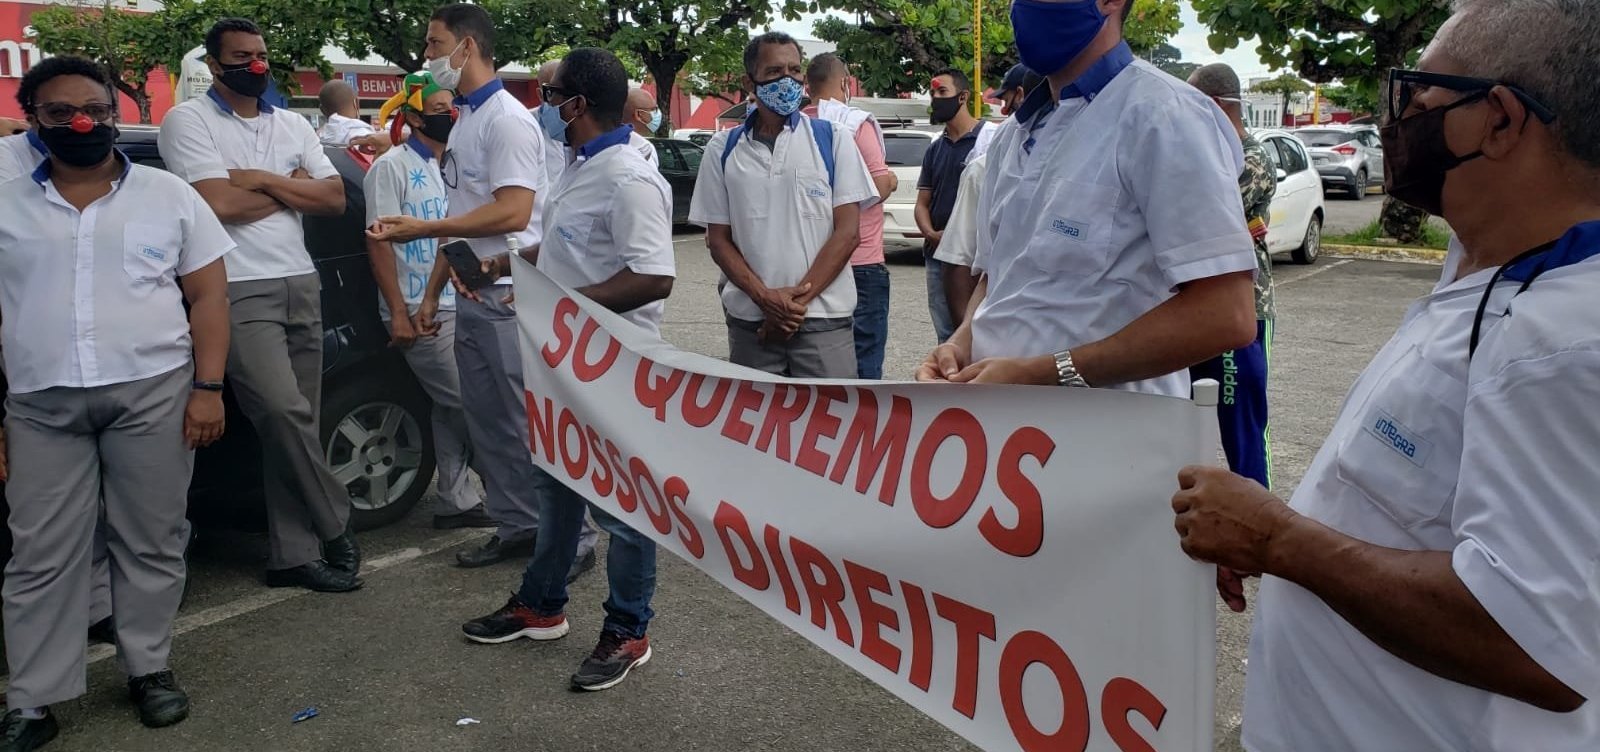 Prefeito de Salvador afirma que em 90 dias ex-funcionários da CSN serão indenizados